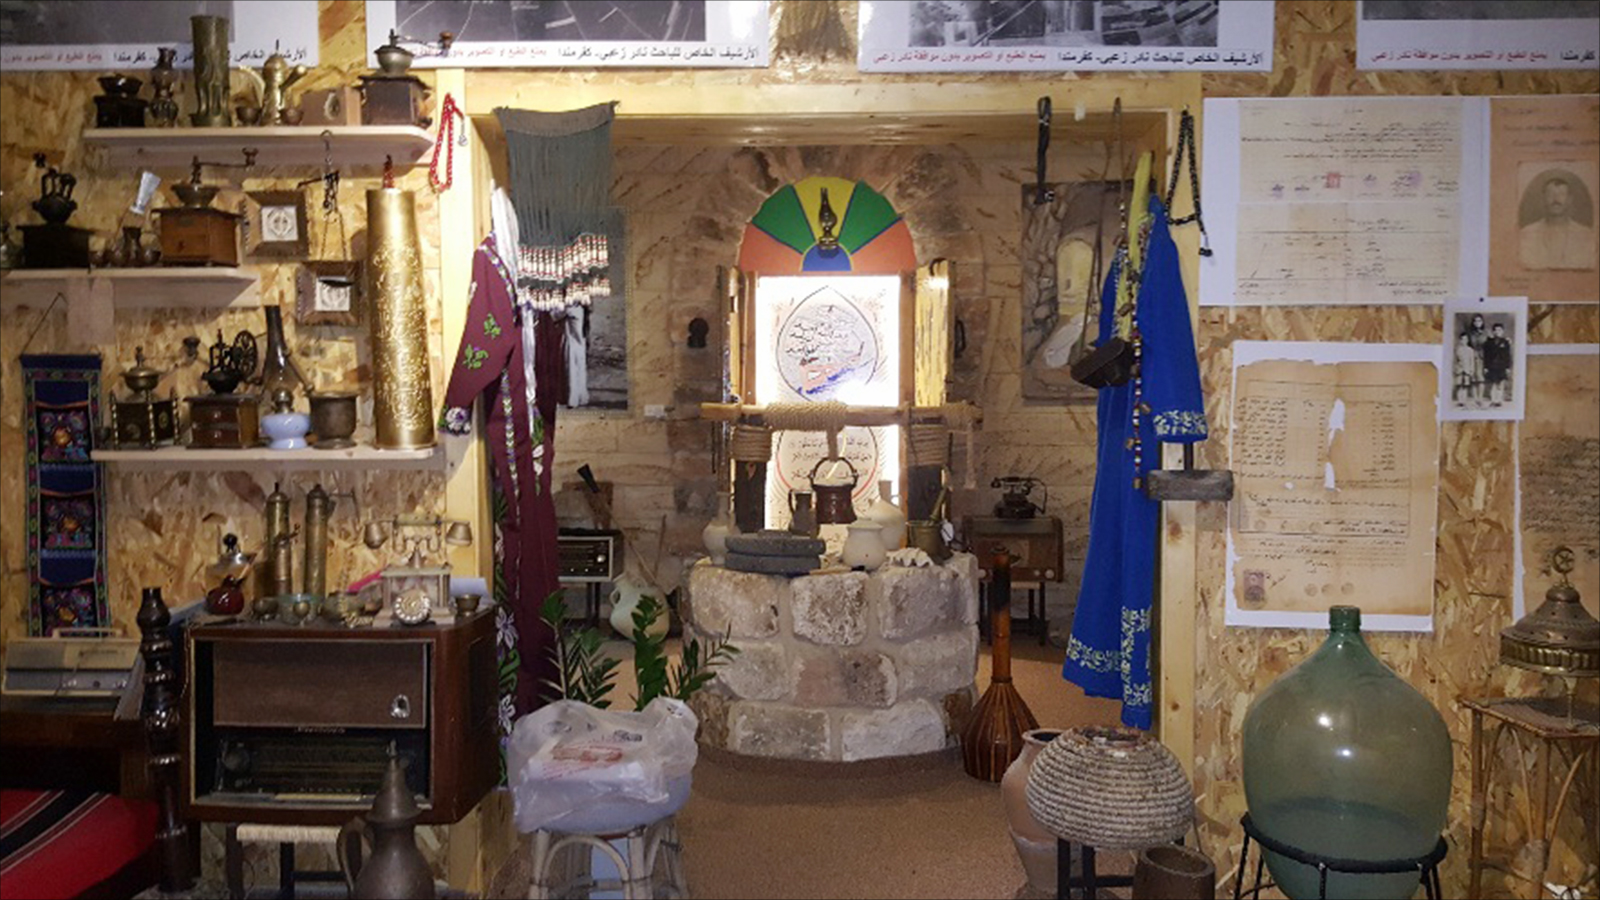 جانب من الموجودات النادرة والغنية بالدلالات التي يعج بها متحف المعلم نادر زعبي في كفرمندا داخل أراضي الـ 48(الجزيرة)